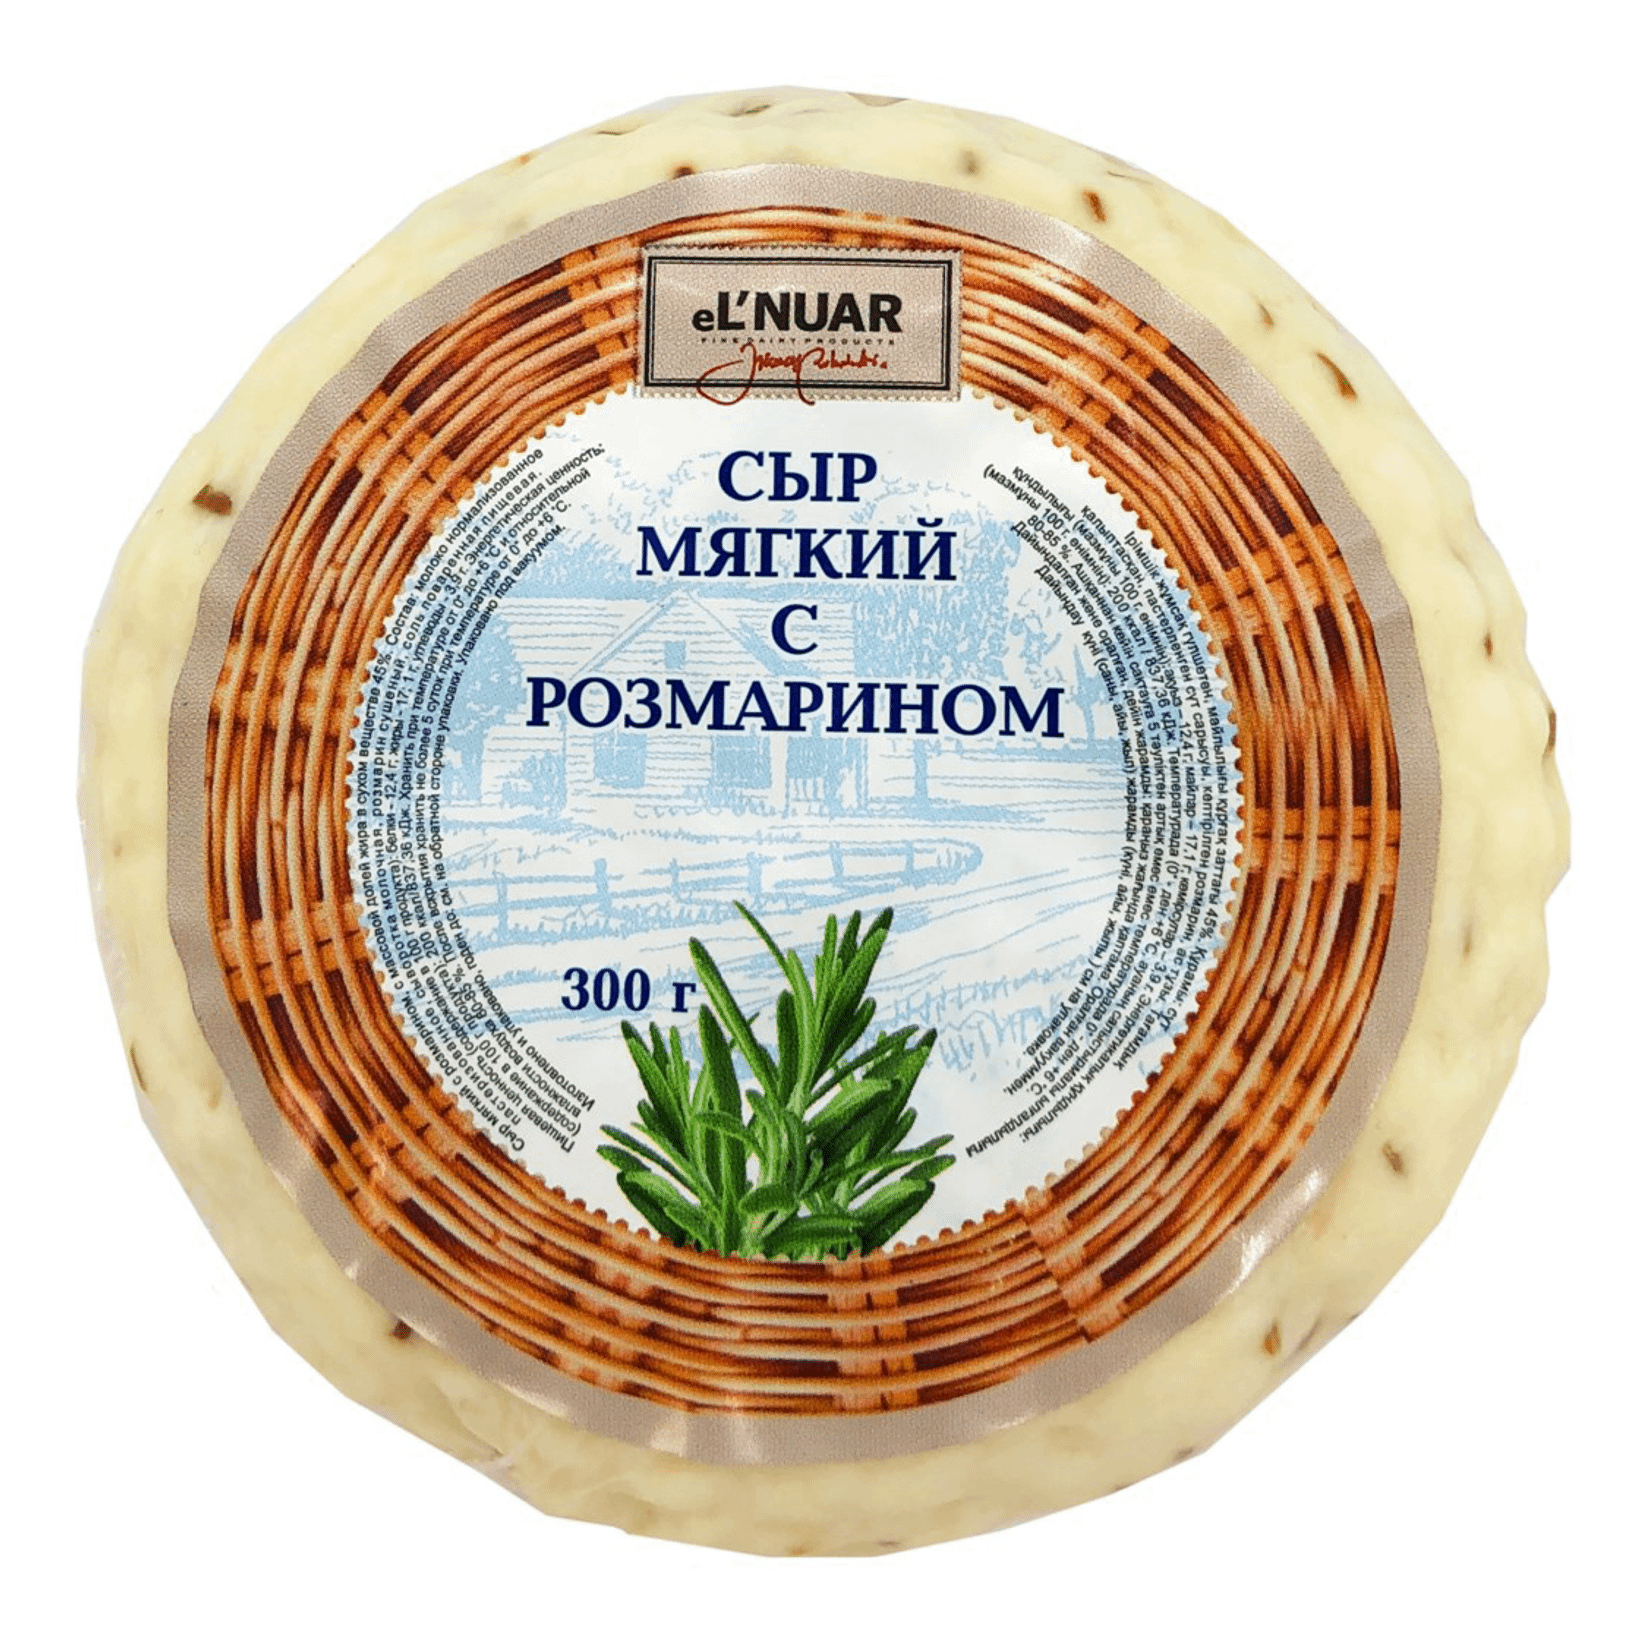 Мягкий сыр eL`NATUR с розмарином, 300 г